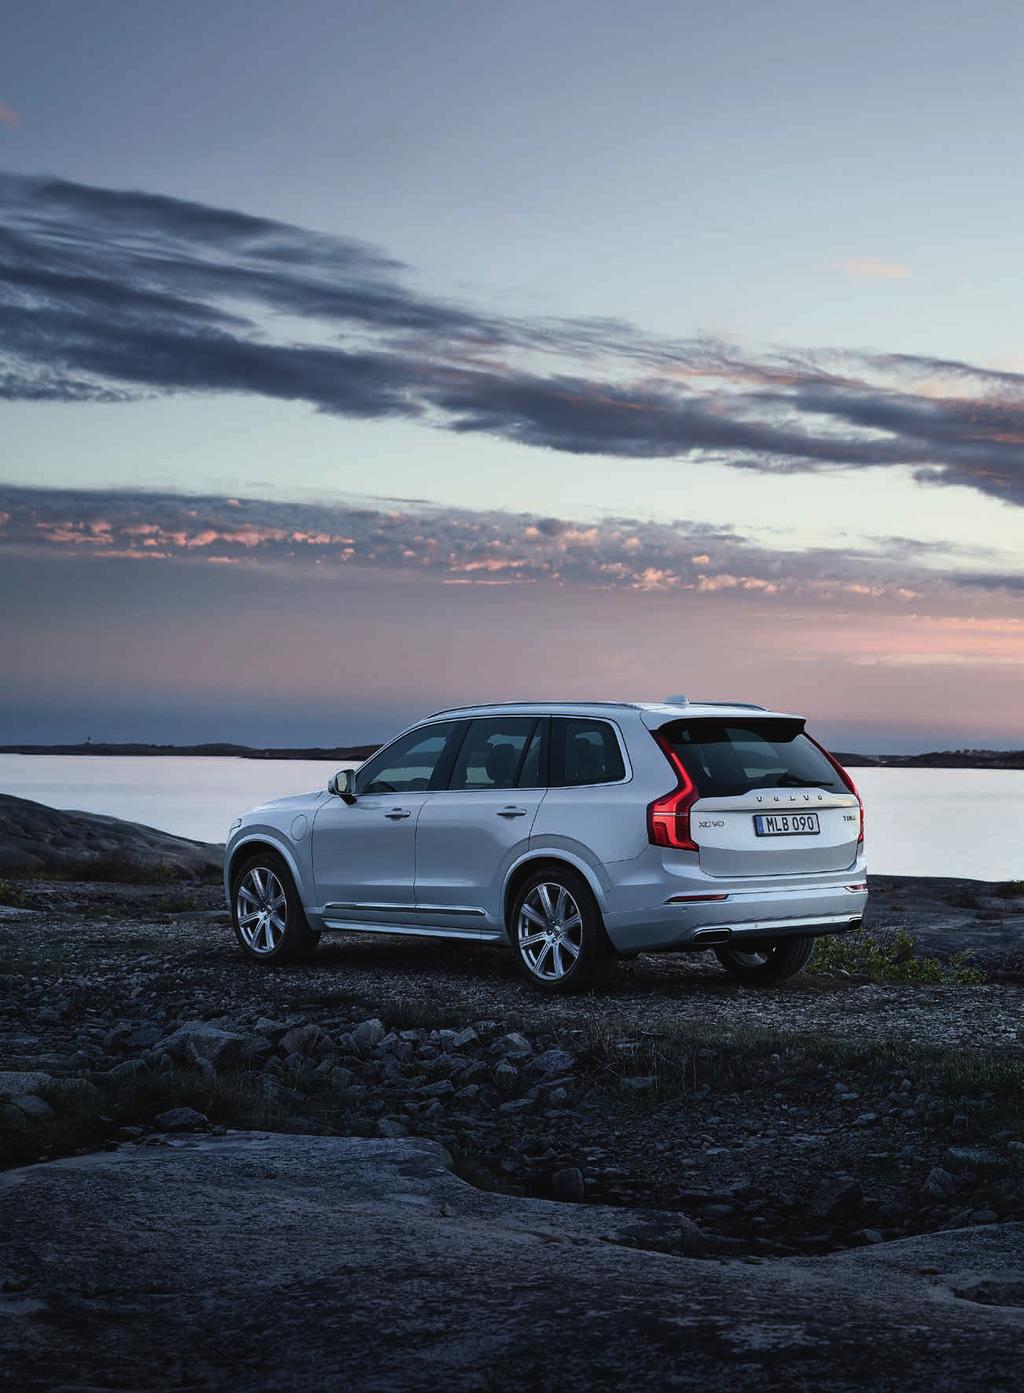 Vår mest exklusiva bil Volvo XC90 är en fullvuxen SUV där du och dina passagerare åker rymligt och självklart med allra högsta säkerhet.